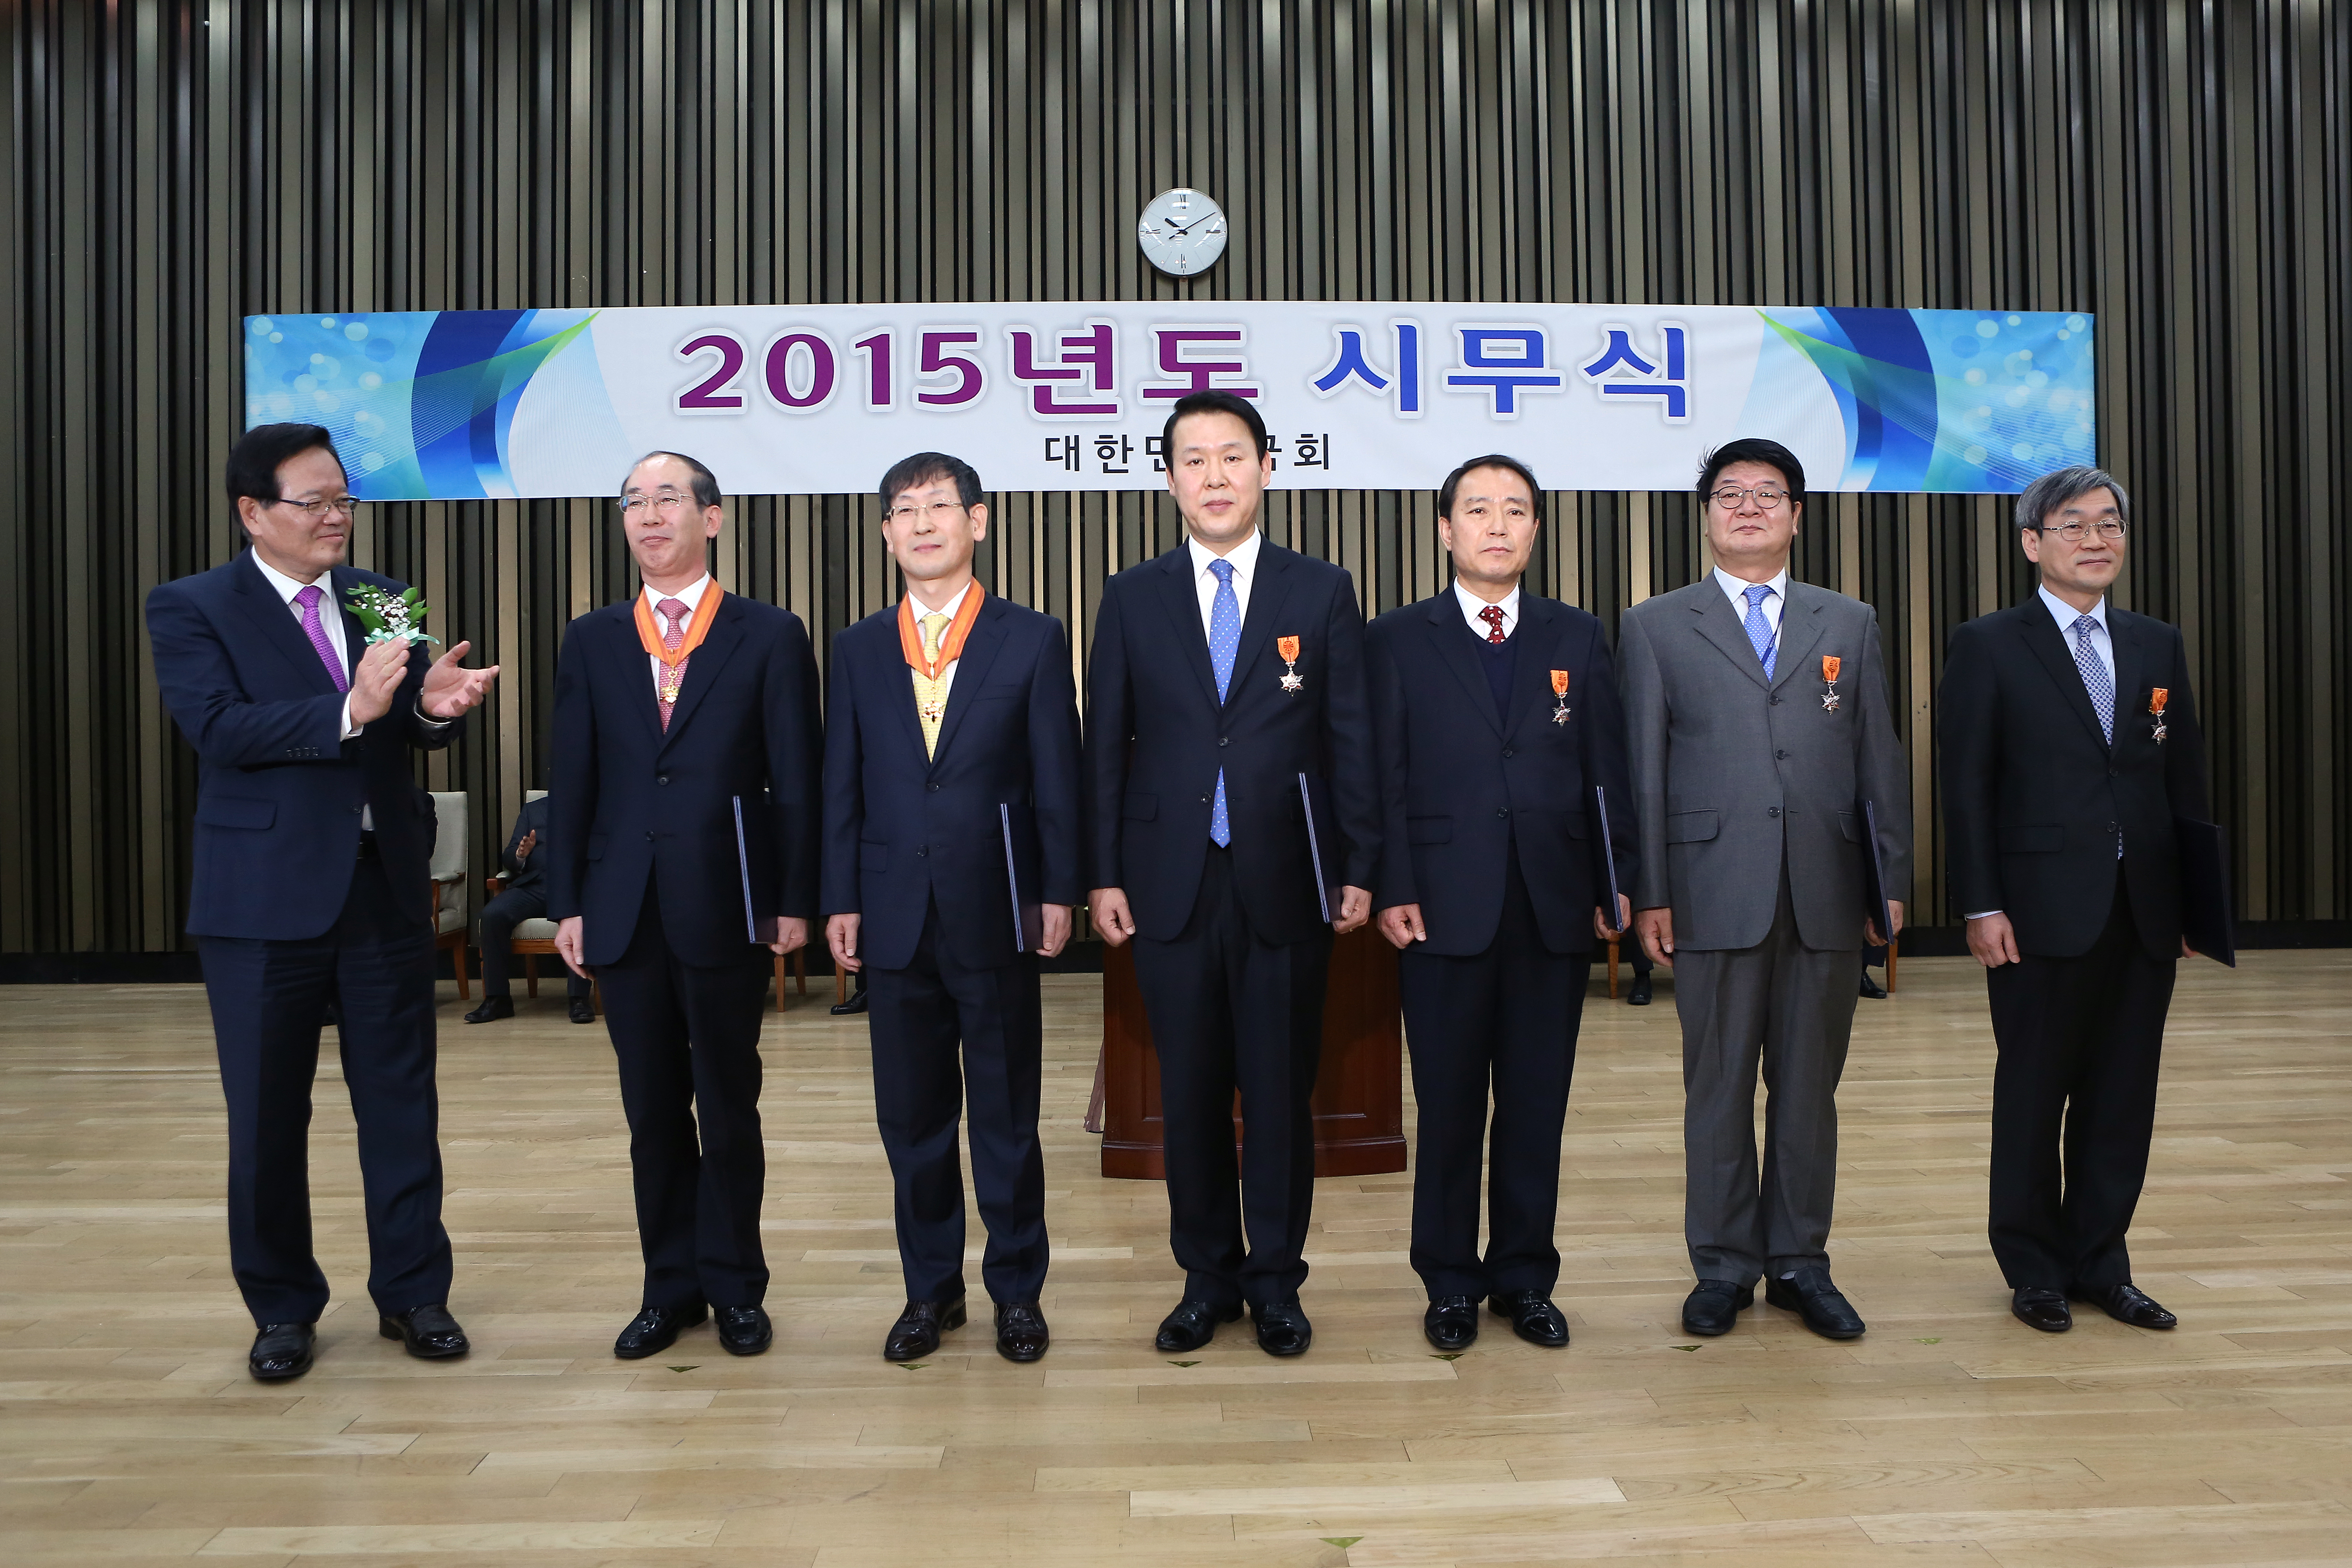 555정의화 의장, 2015 국회 시무식 참석5.jpg